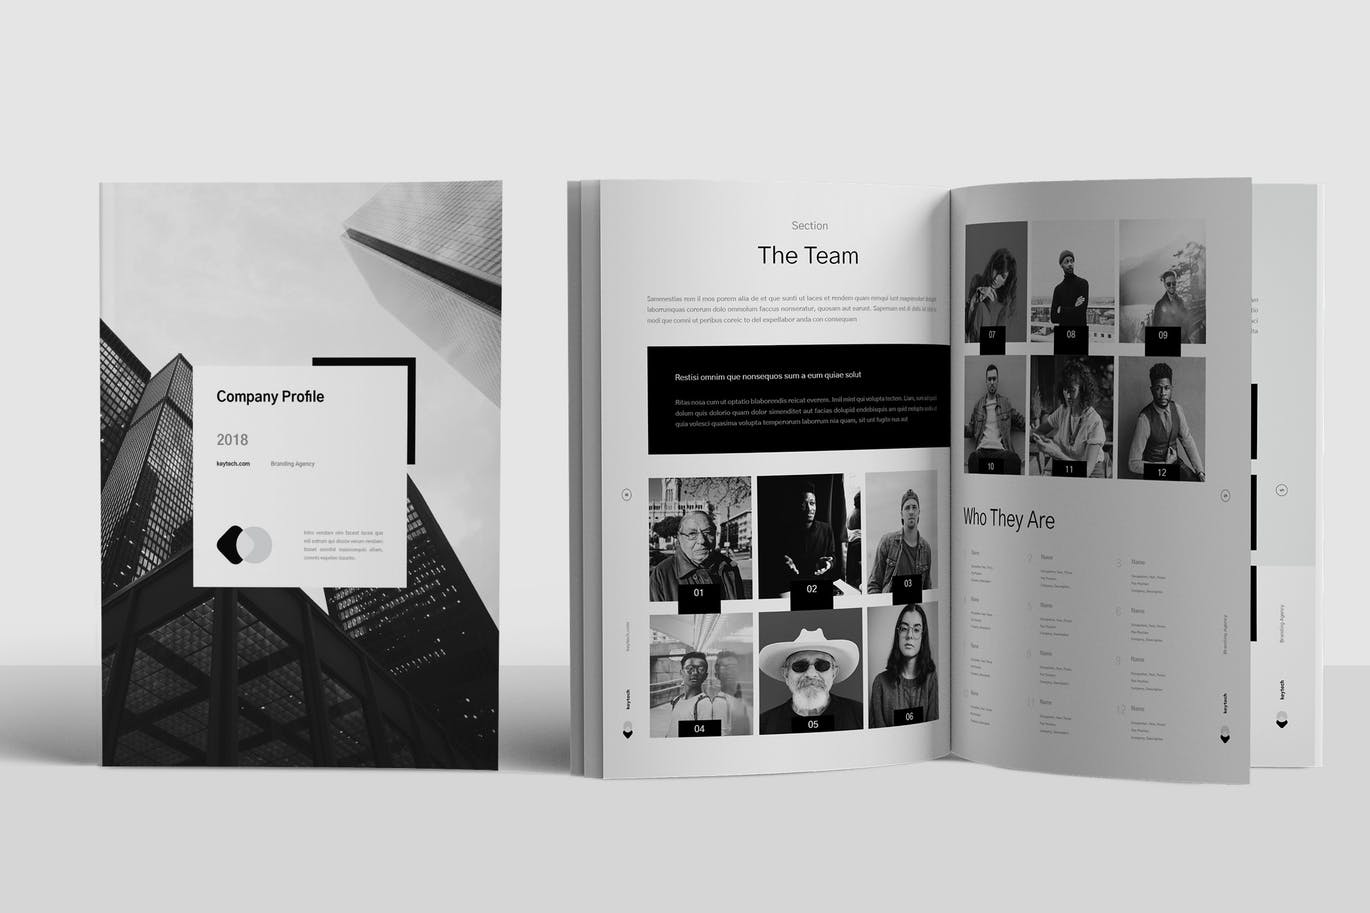 黑白配色的高端时尚的企业简介画册楼书品牌手册杂志设计模板 c